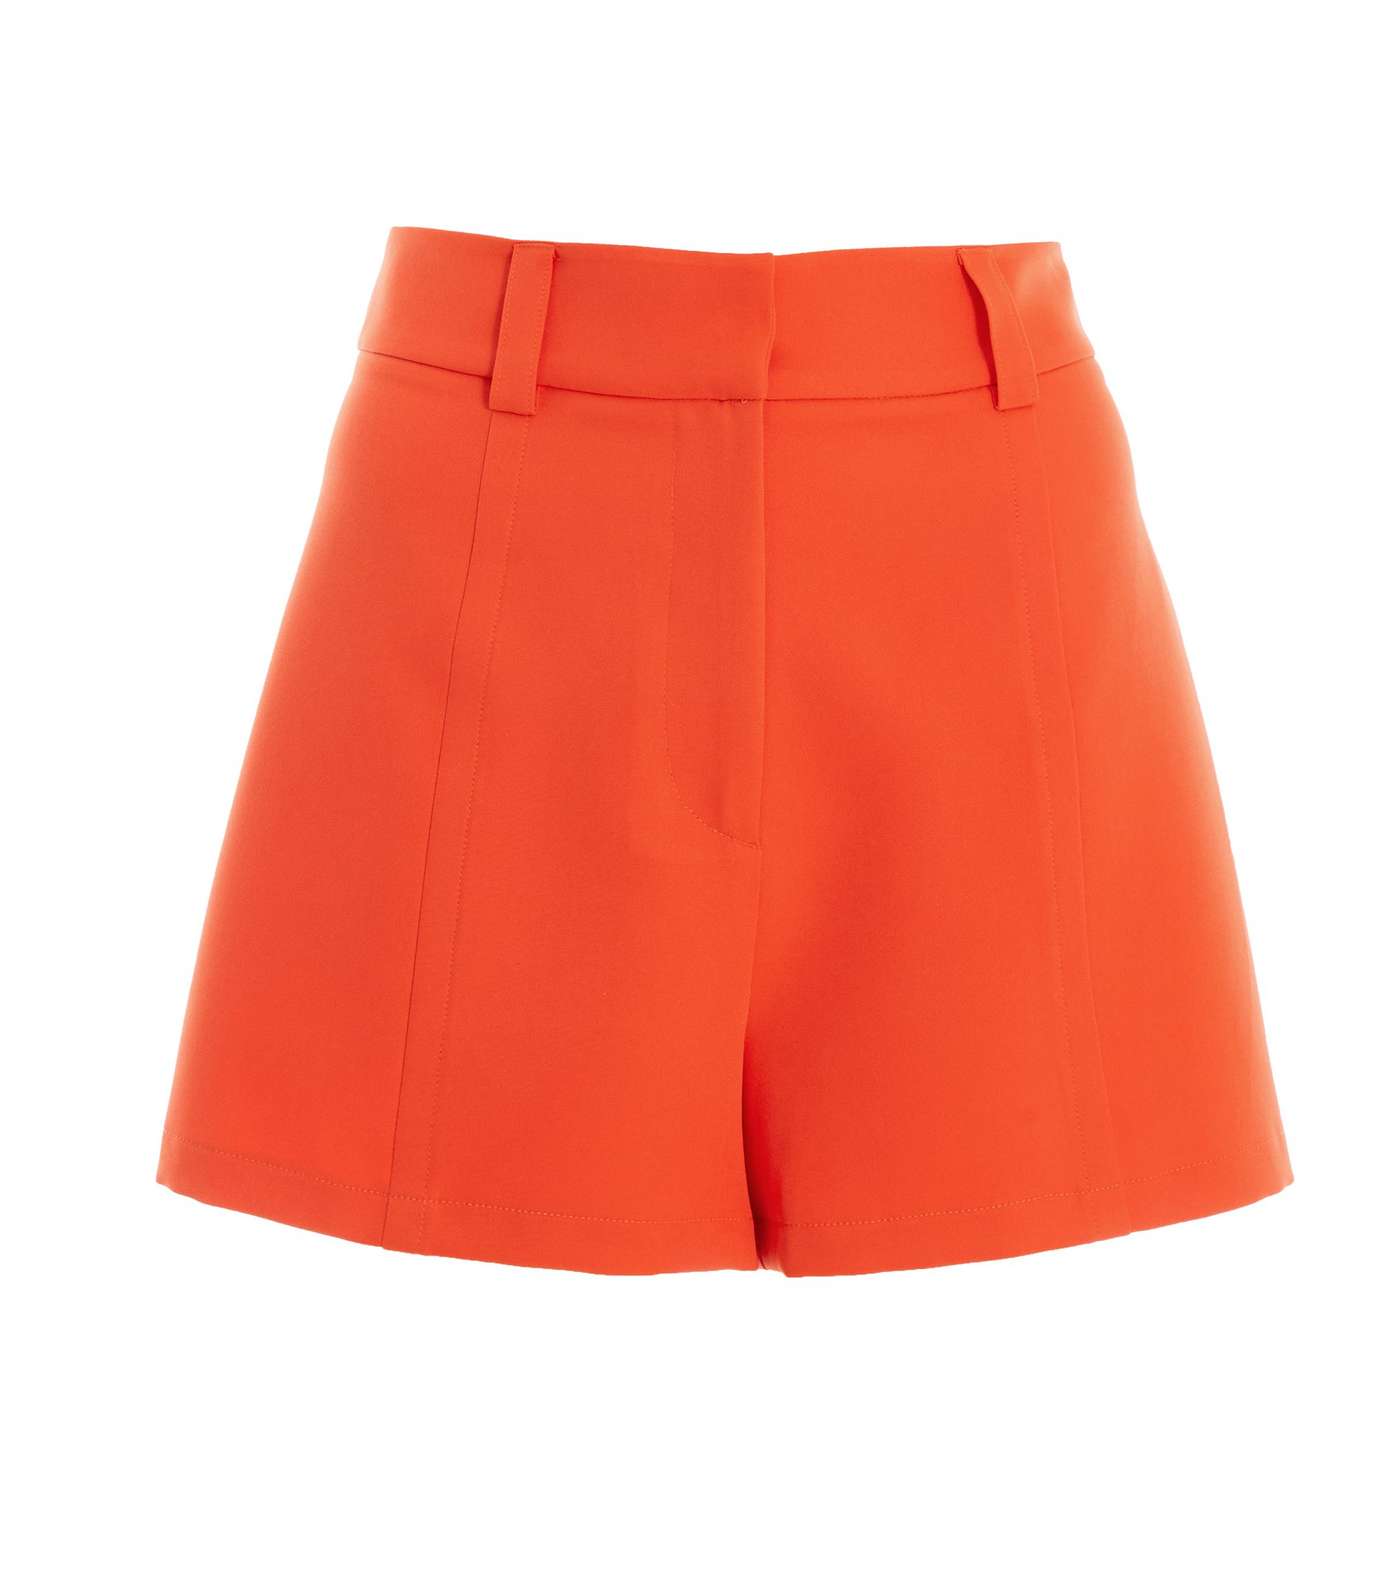 QUIZ Bright Orange High Waist Seam Front Tailored Shorts Image 4